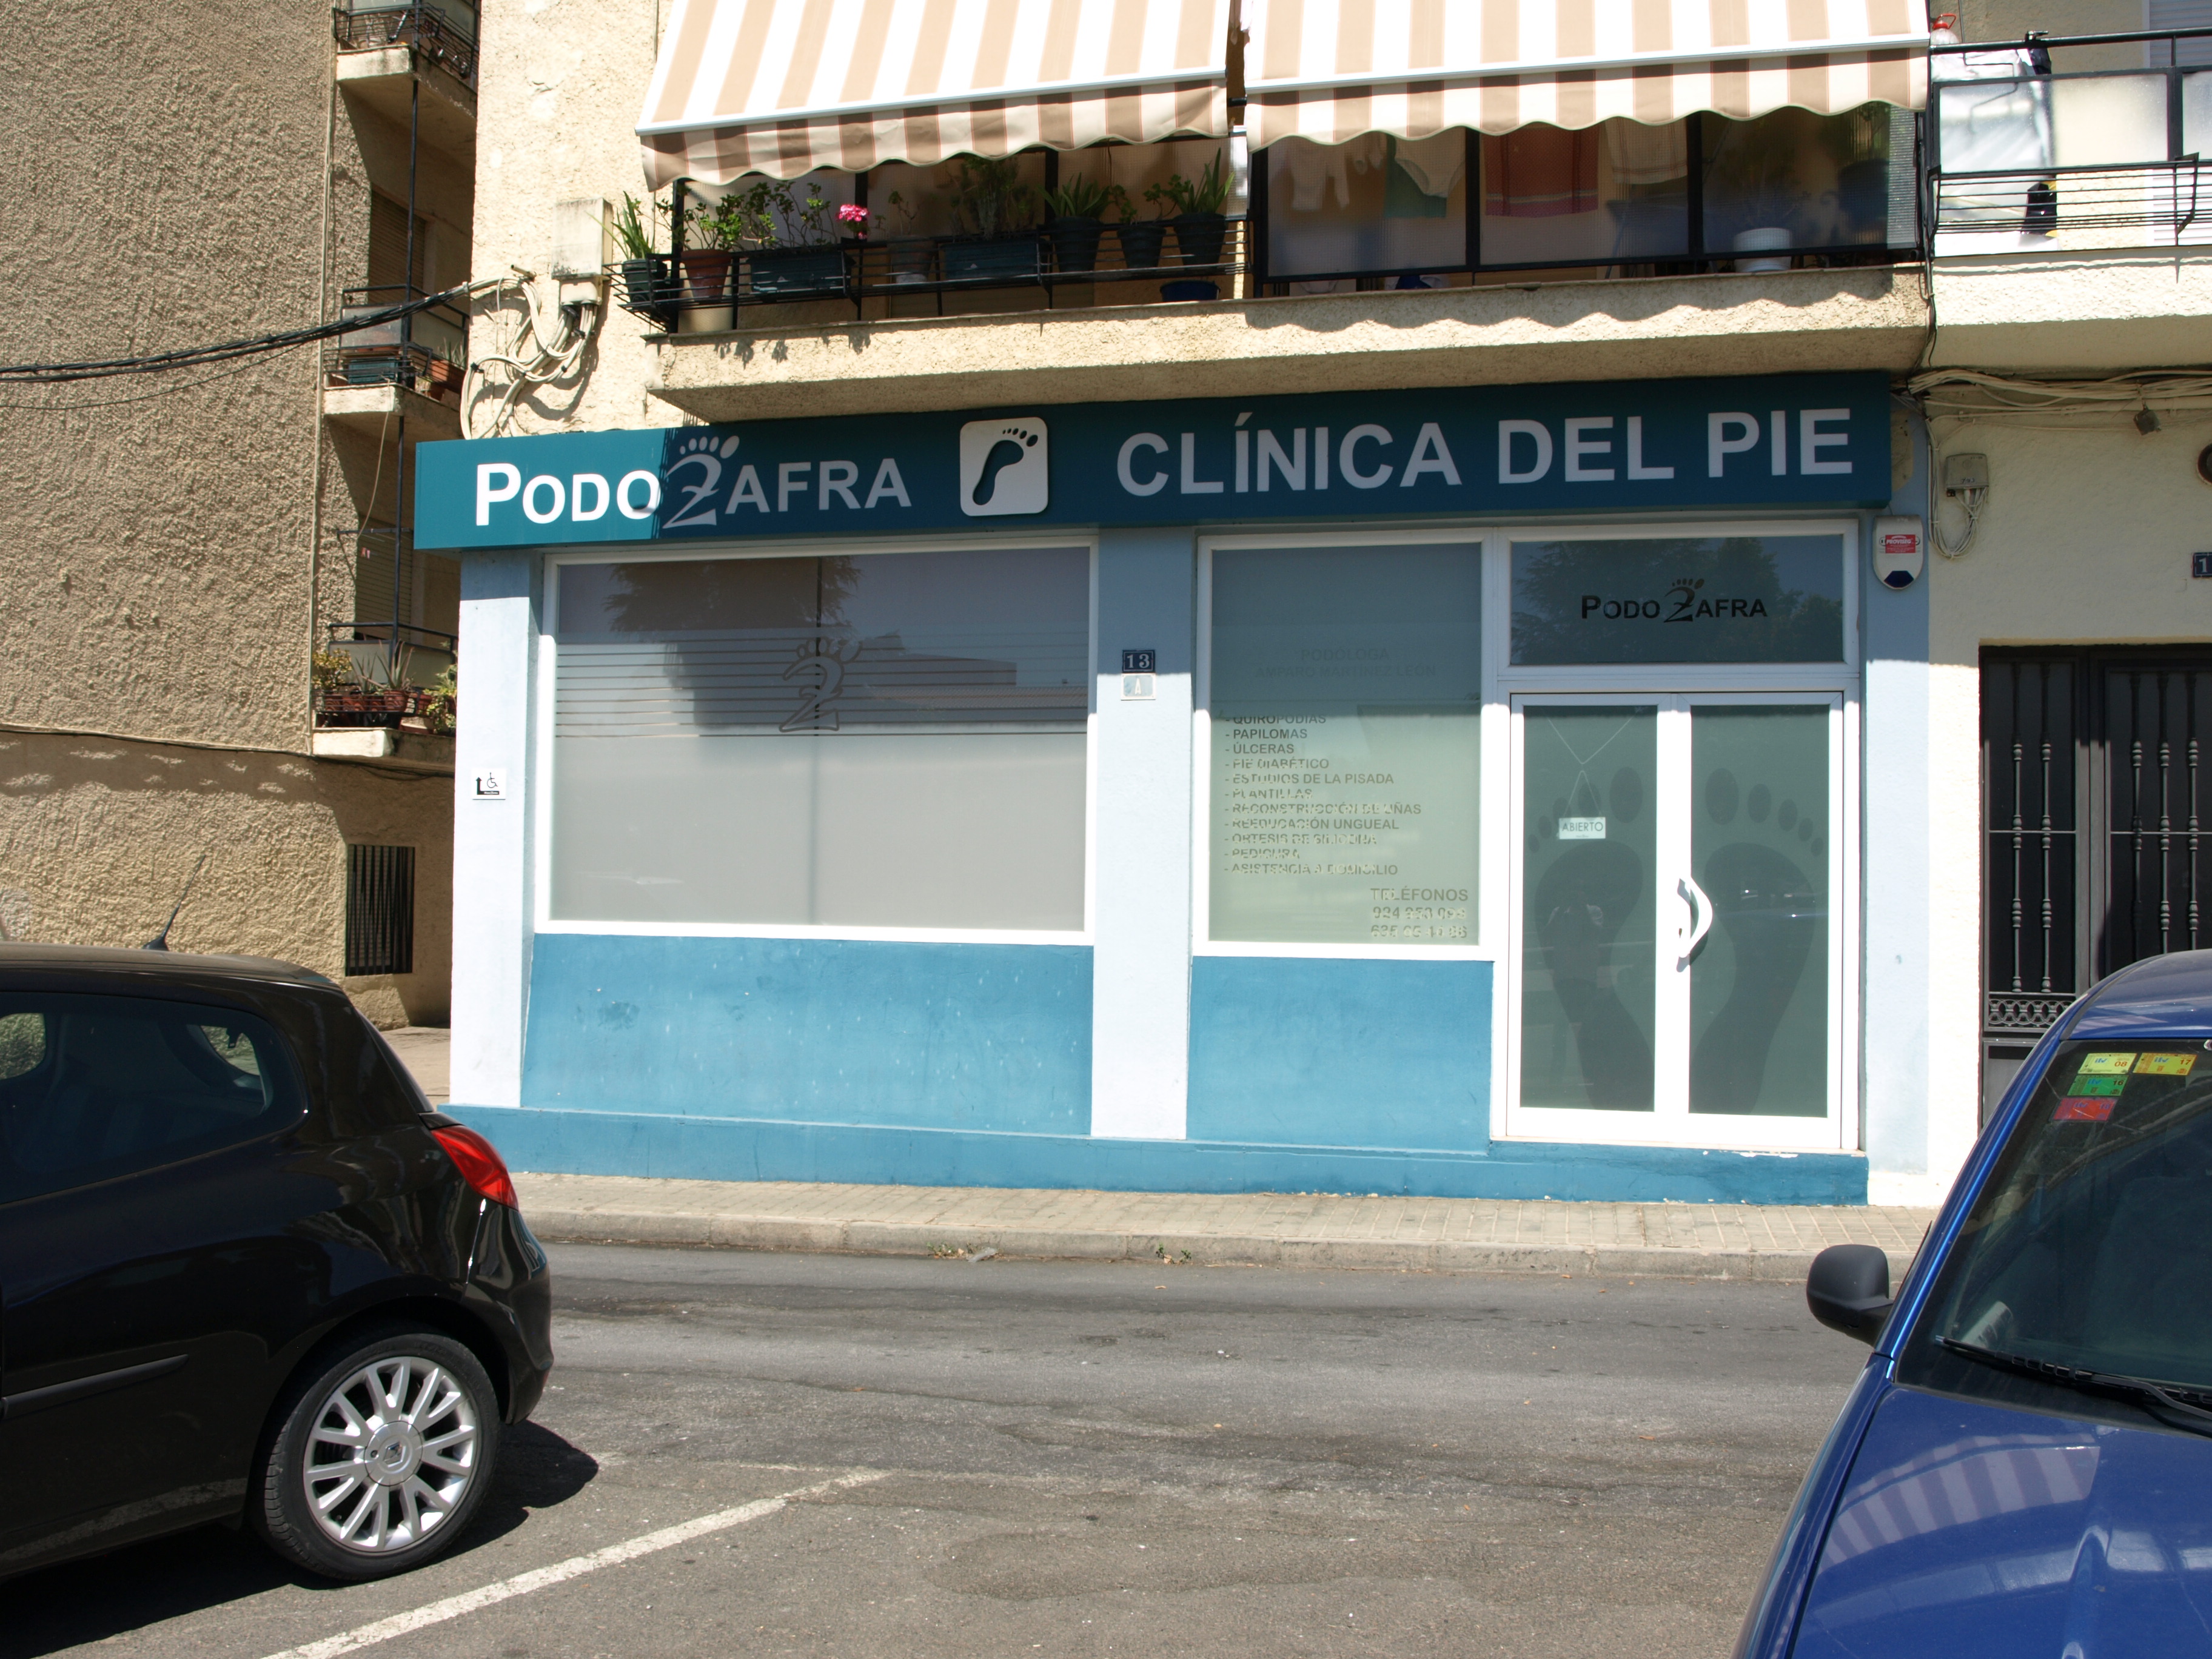 España Clinica del Pie Podozafra